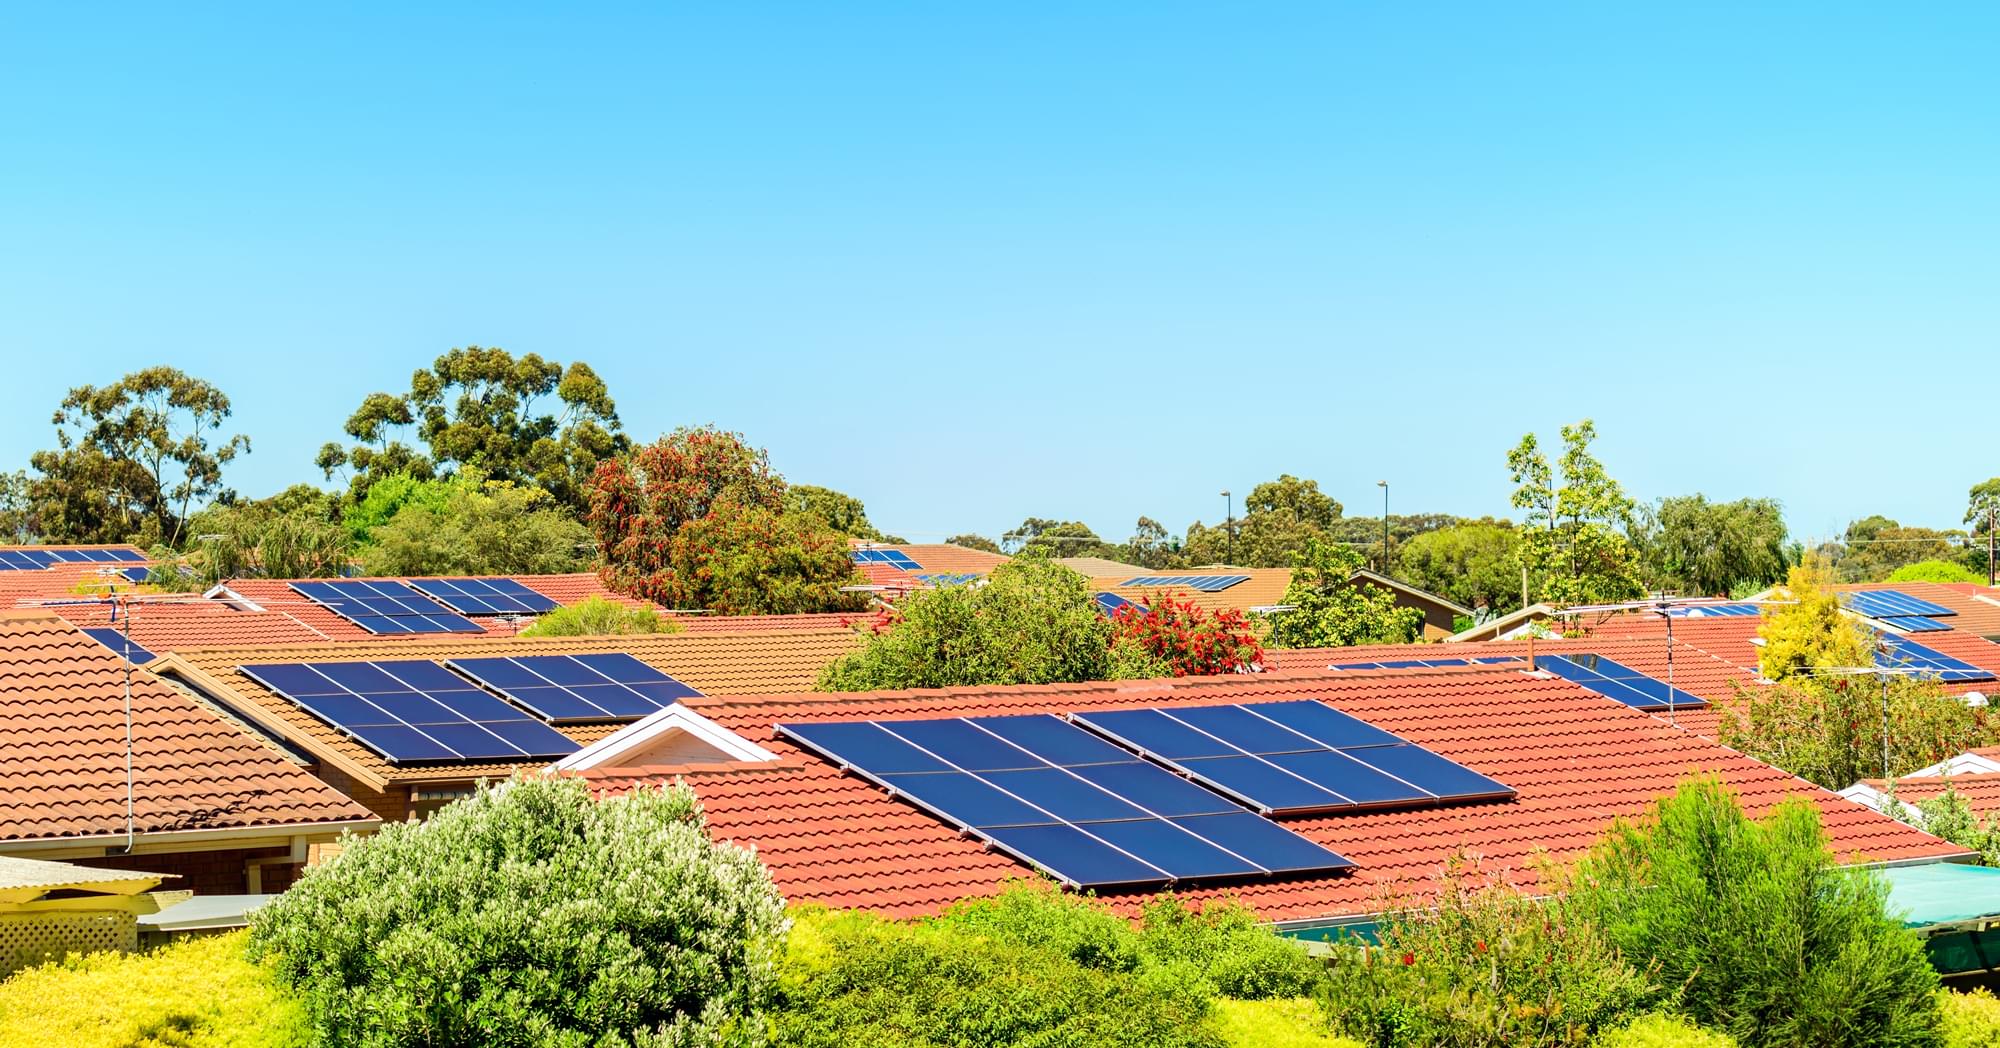 Solar Program Makes Going Solar Easy For Homeowners